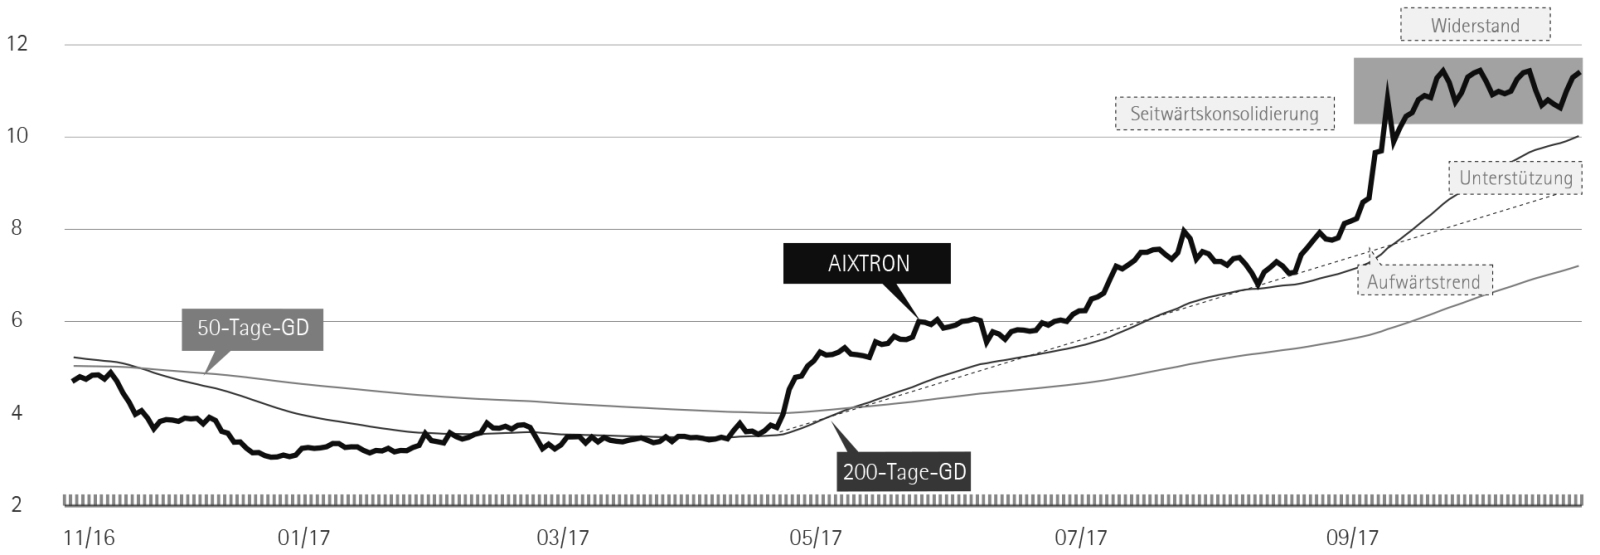 Chartverlauf der Aixtron-Aktie